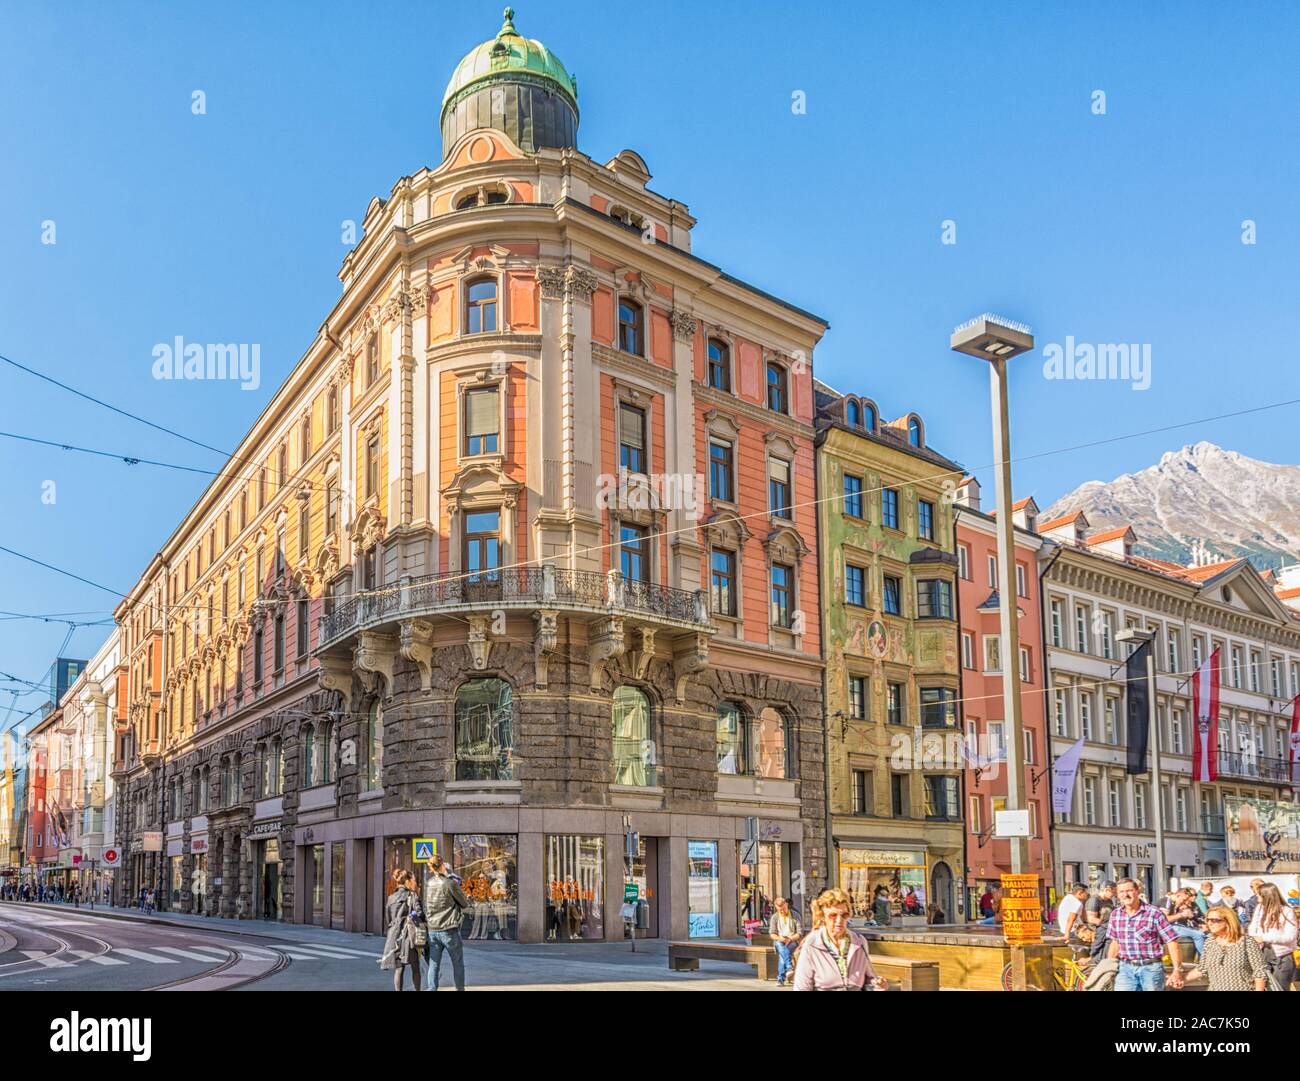 En Innsbruck, Austria, Europa - Octubre 26, 2019: Urban street scene en Innsbruck, Austria. La fachada de los edificios históricos de la famosa ciudad de tiroleses. Foto de stock